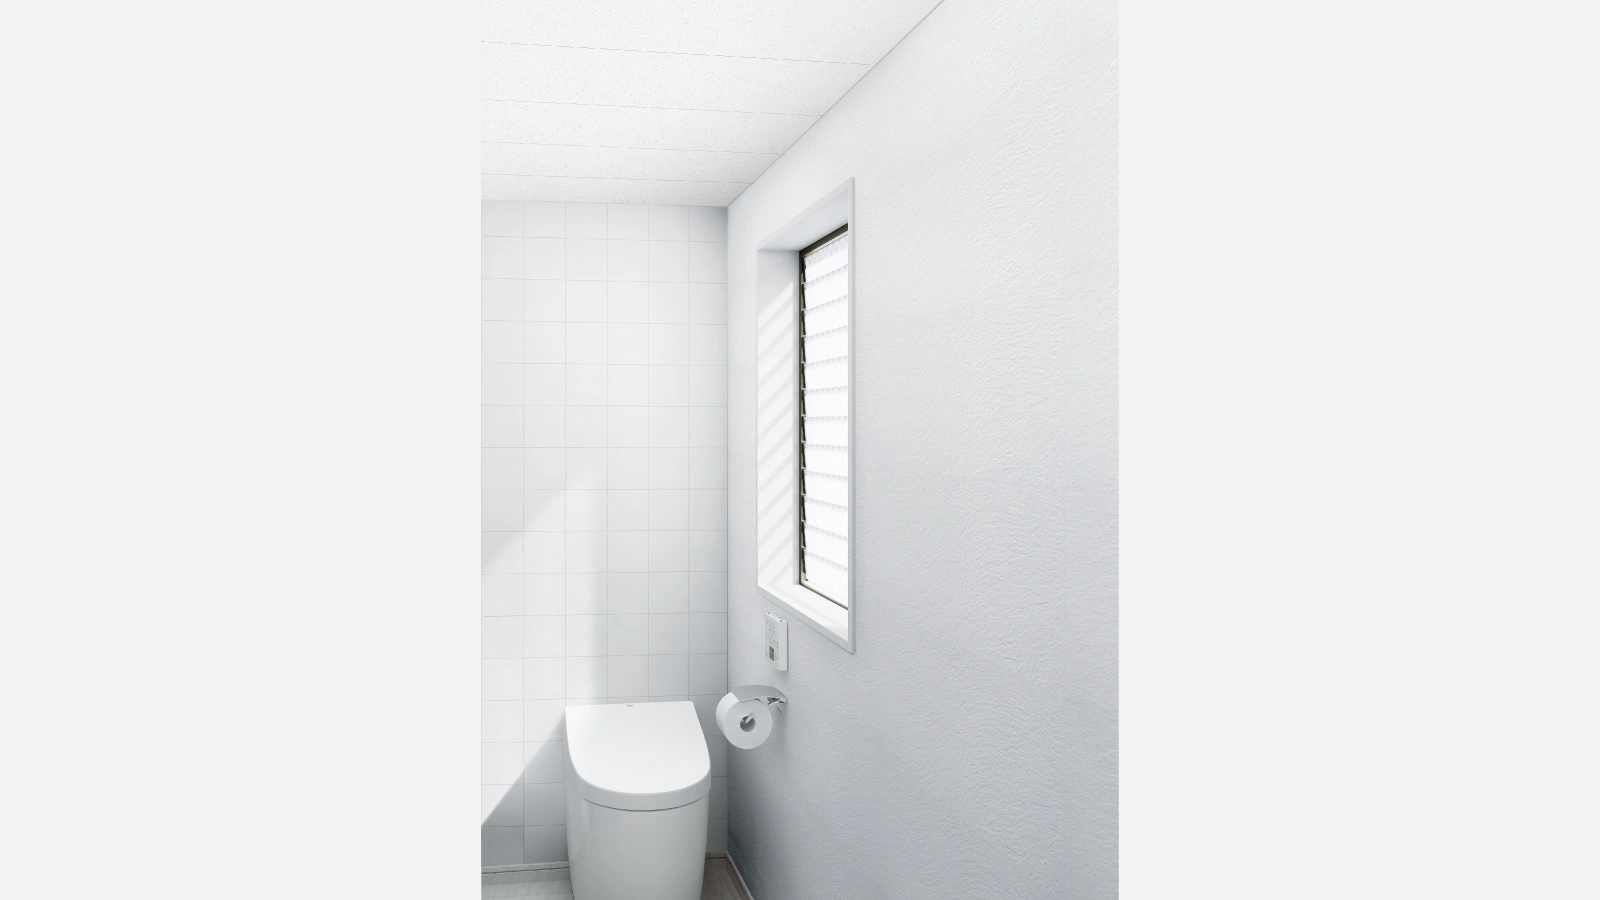 クリアトーン12SⅡ トイレ天井の製品ページです。